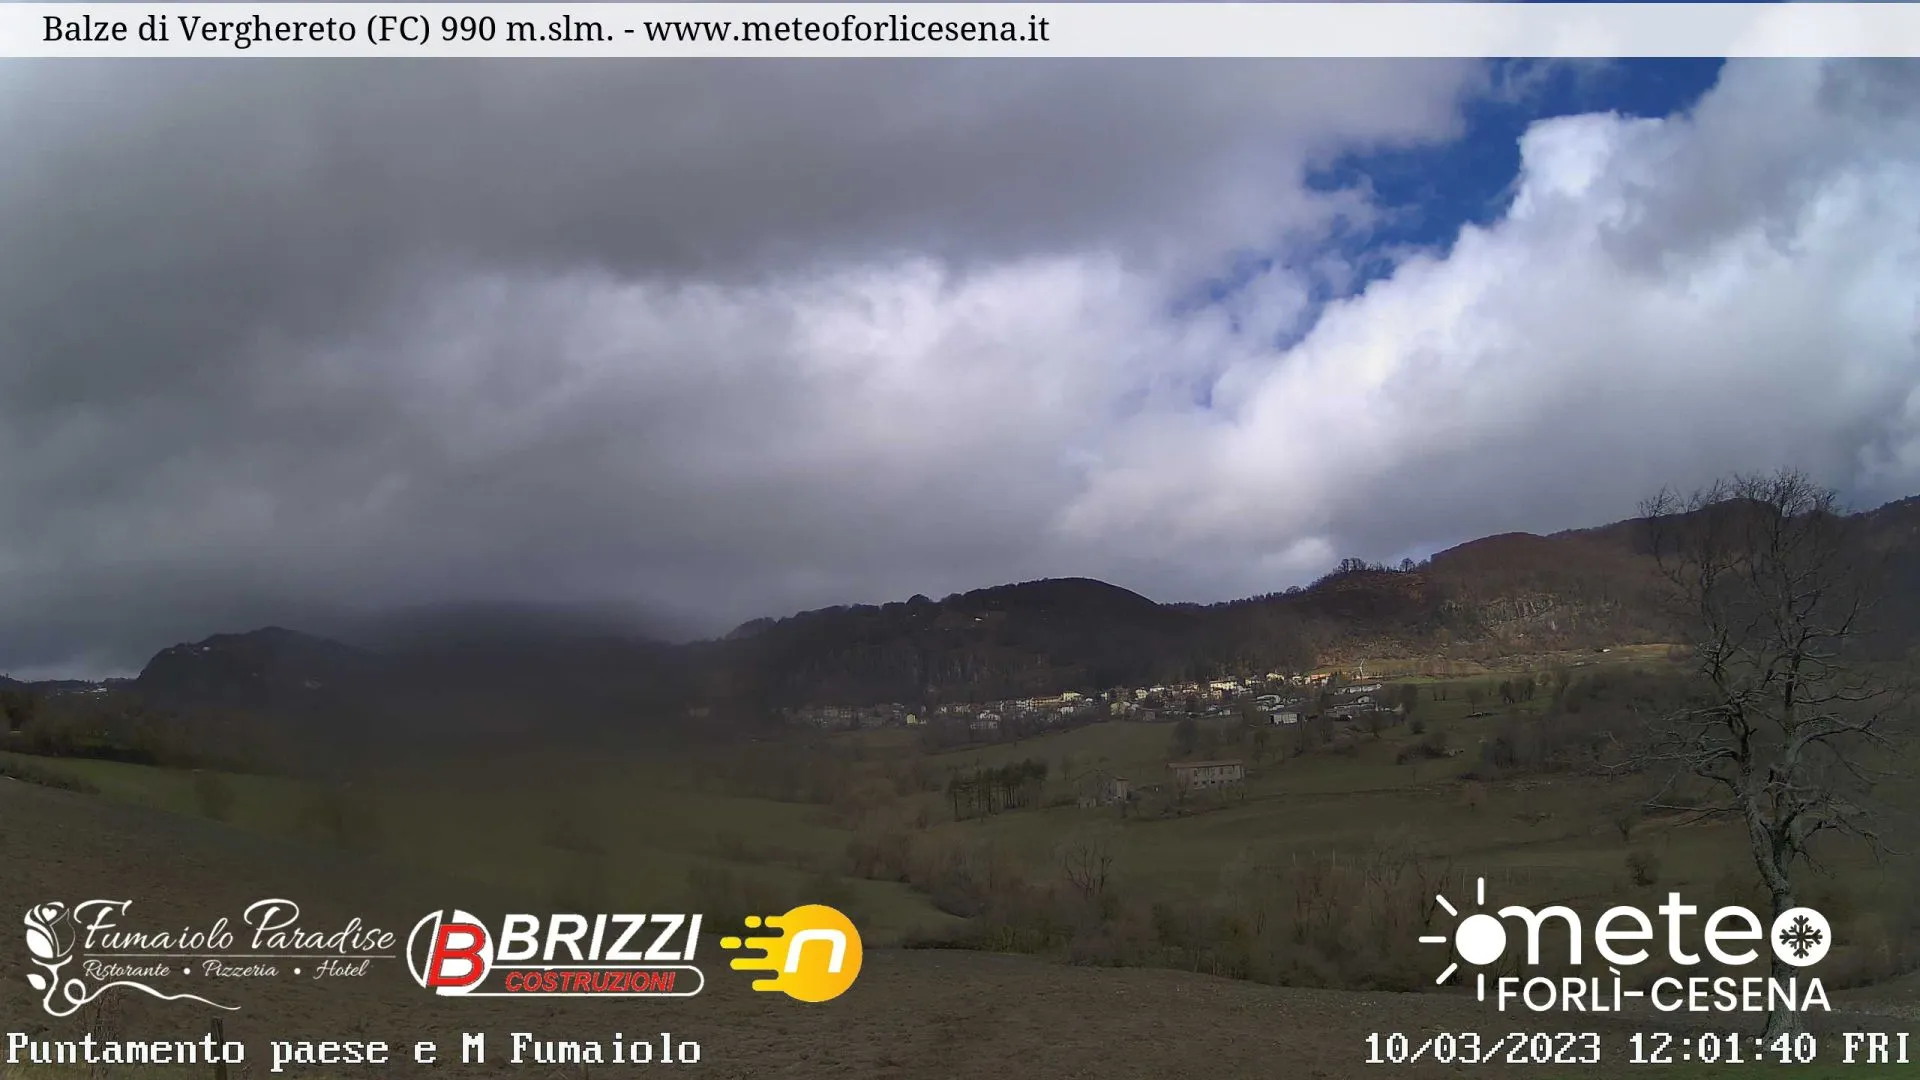 webcam Balze di Berghereto, webcam  provincia di Forlì-Cesena, webcam Emilia-Romagna,
                                                   webcam appennino tosco-romagnolo